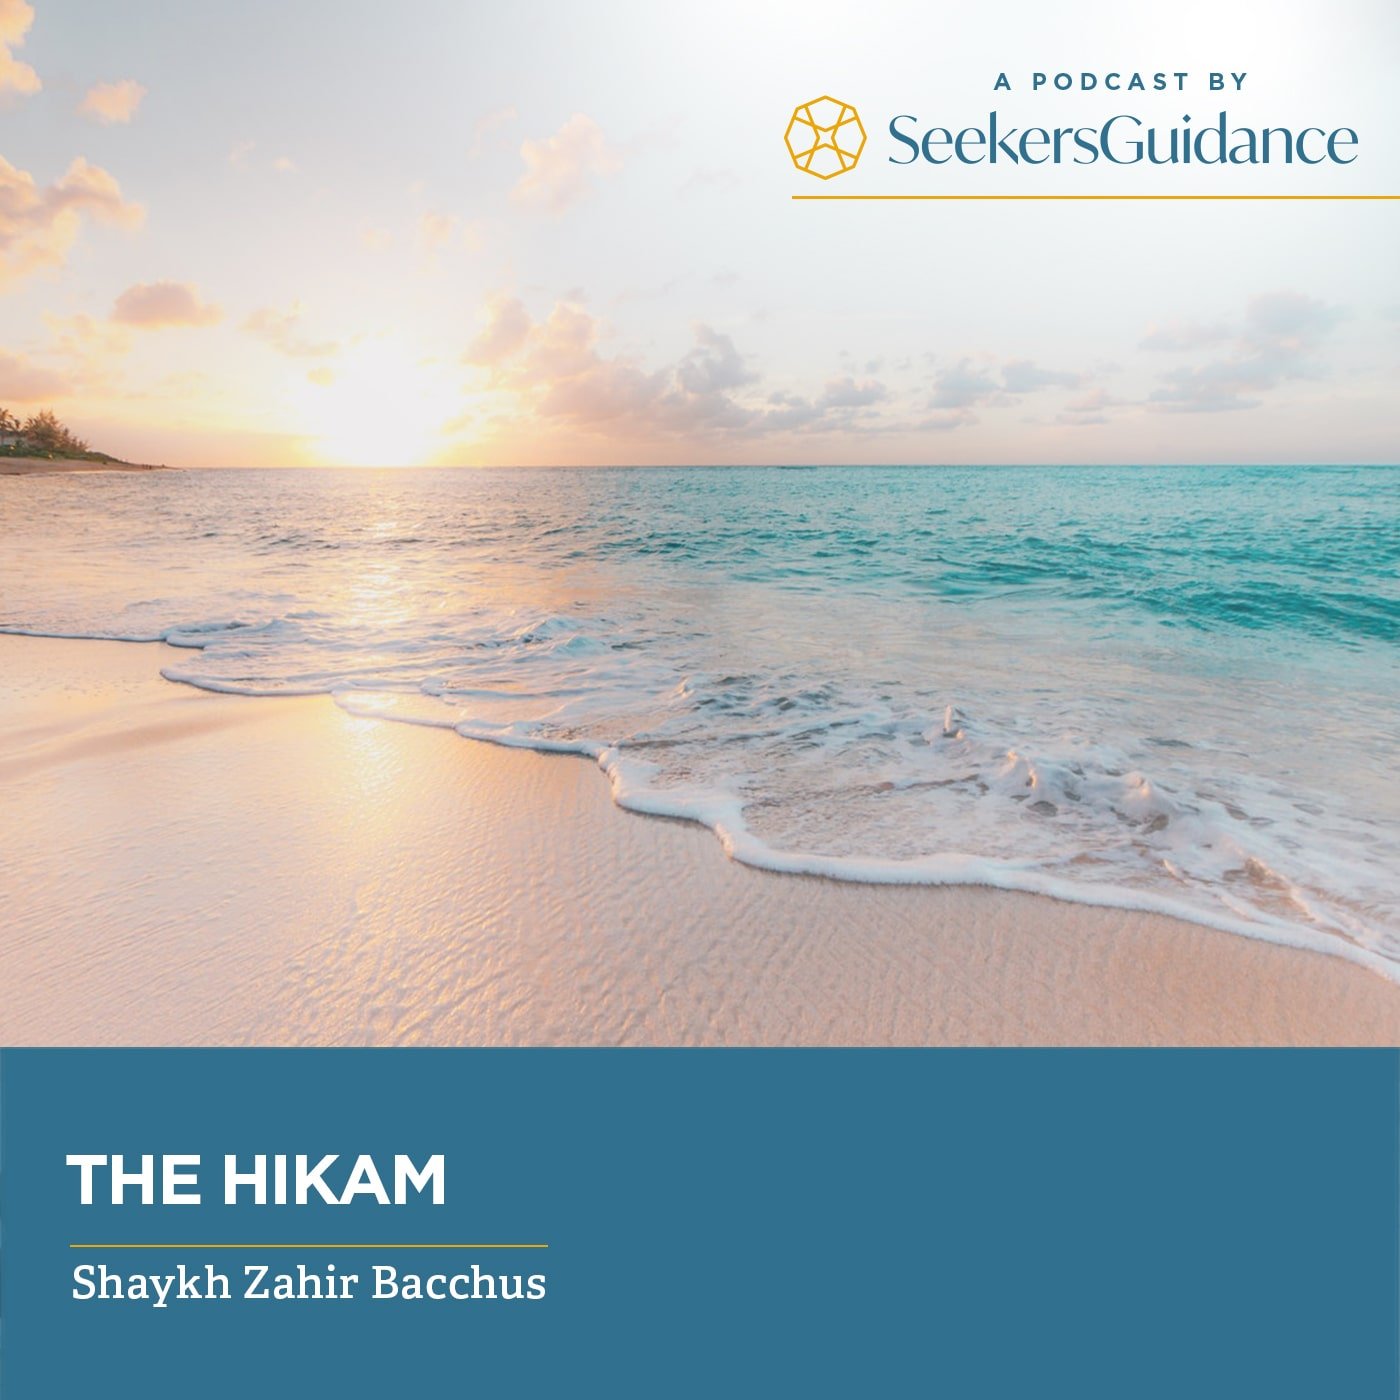 The Hikam with Shaykh Zahir Bacchus